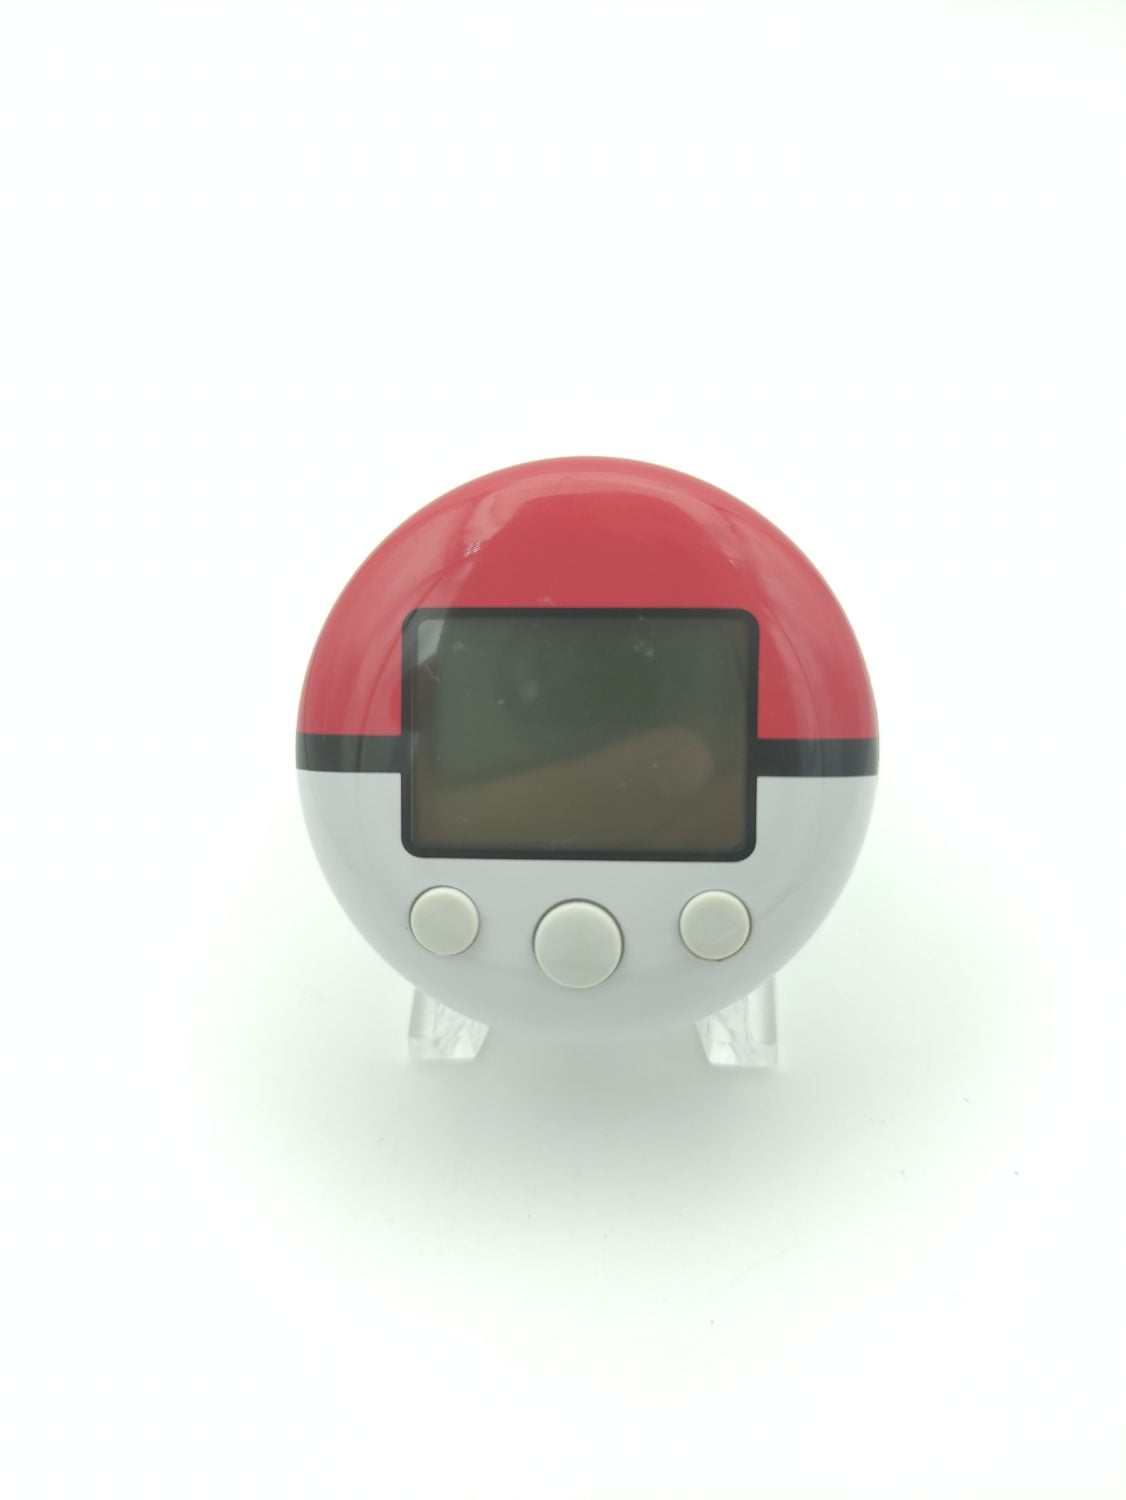 Pokewalker  Pokemon Nintendo DS Accessory japan Boutique-Tamagotchis